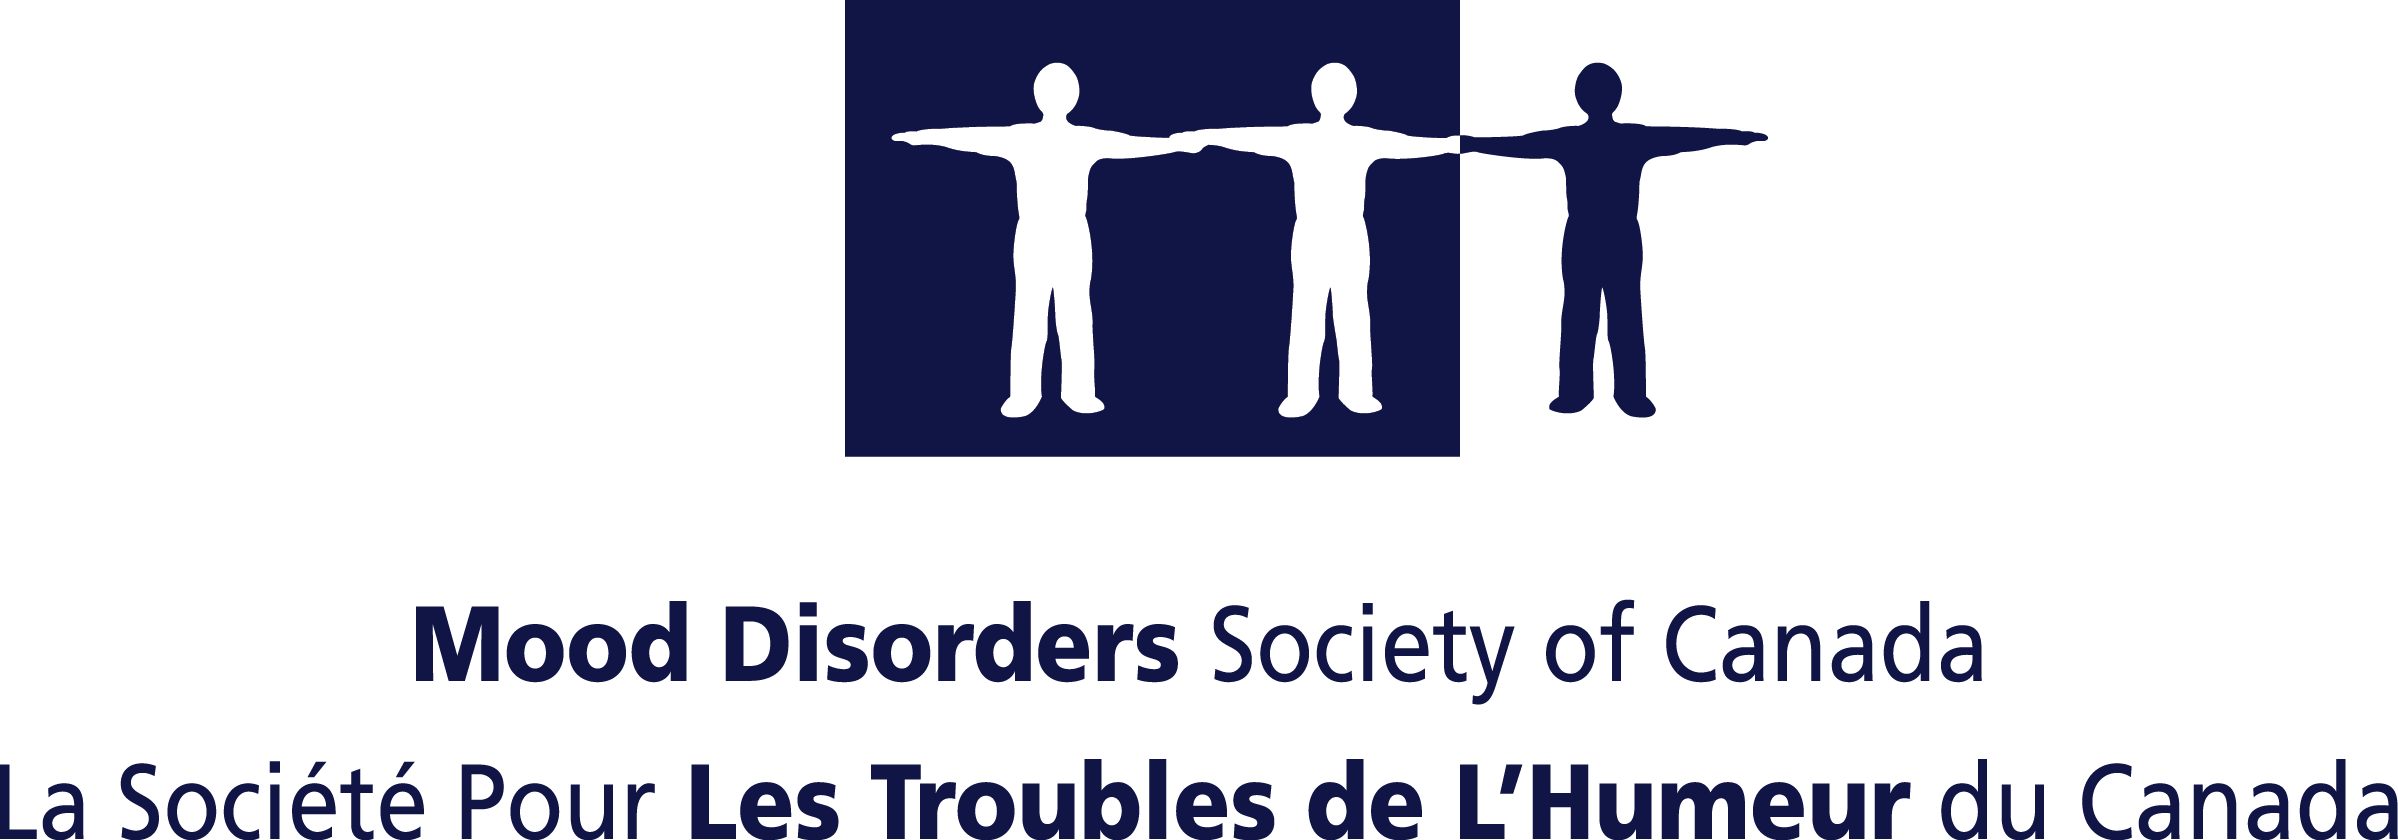 LA SOCIETE POUR LES TROUBLES DE L'HUMEUR DU CANADA logo